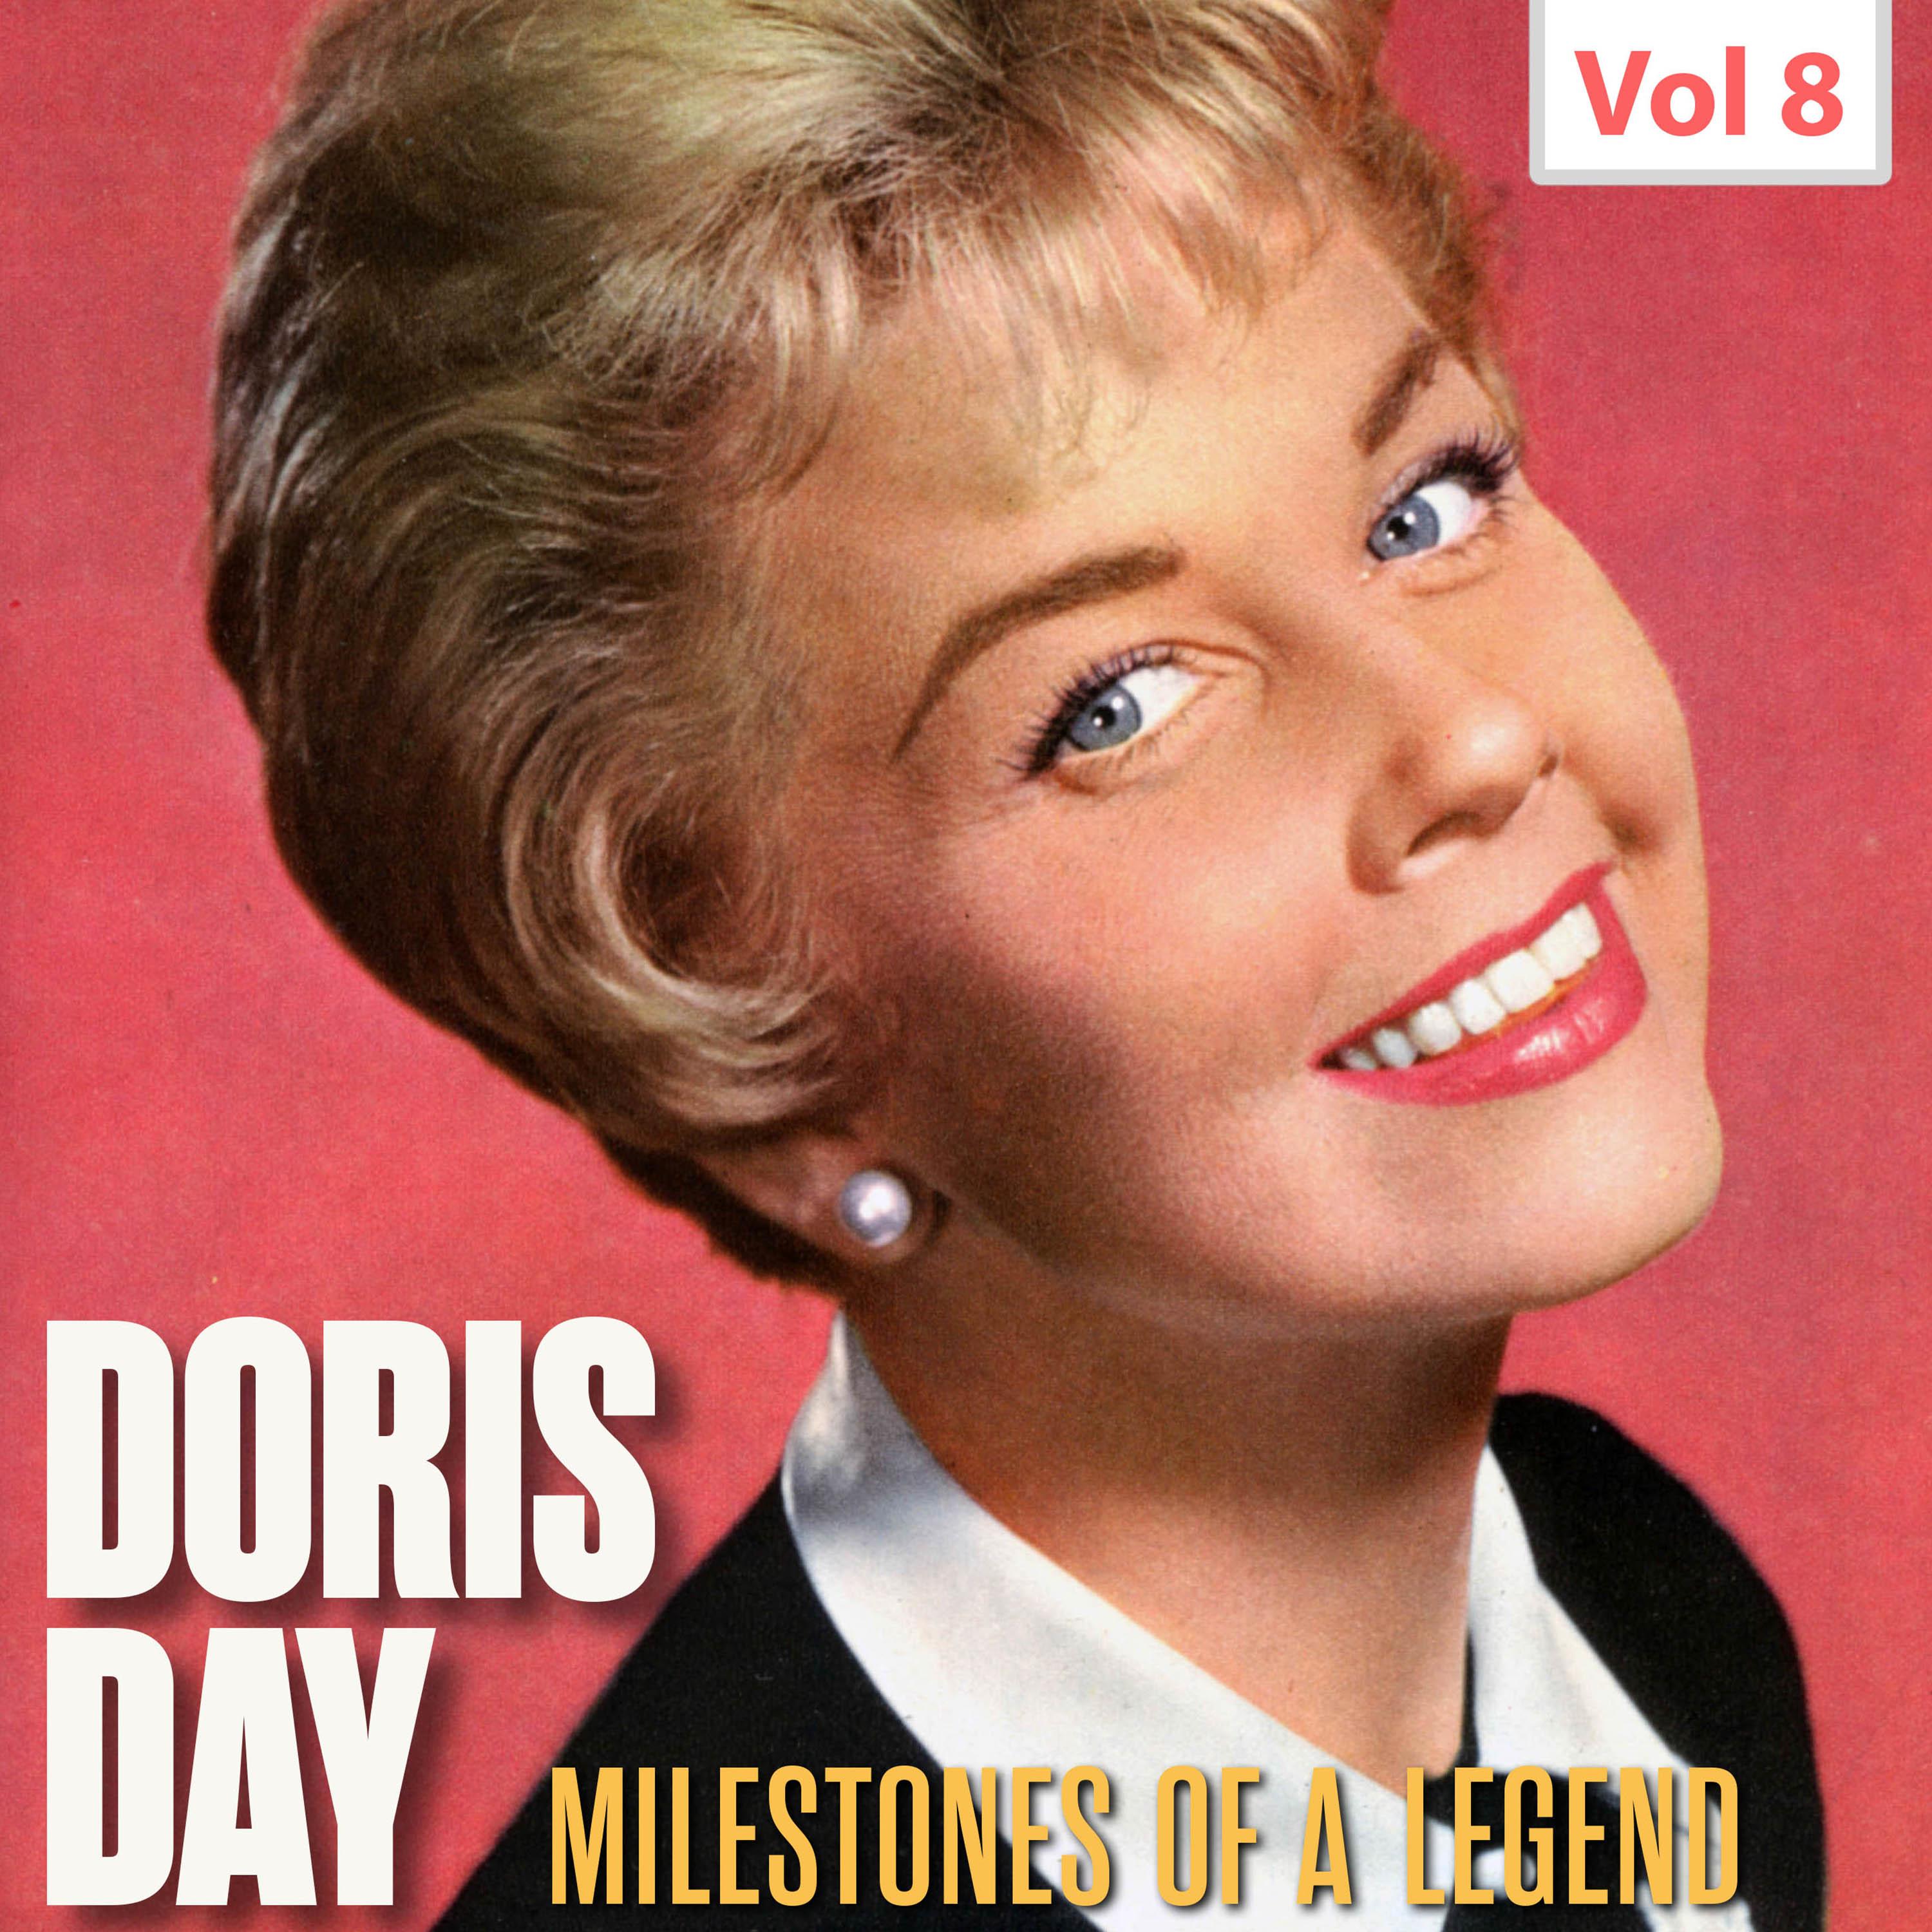 Milestones of a Legend - Doris Day, Vol. 8